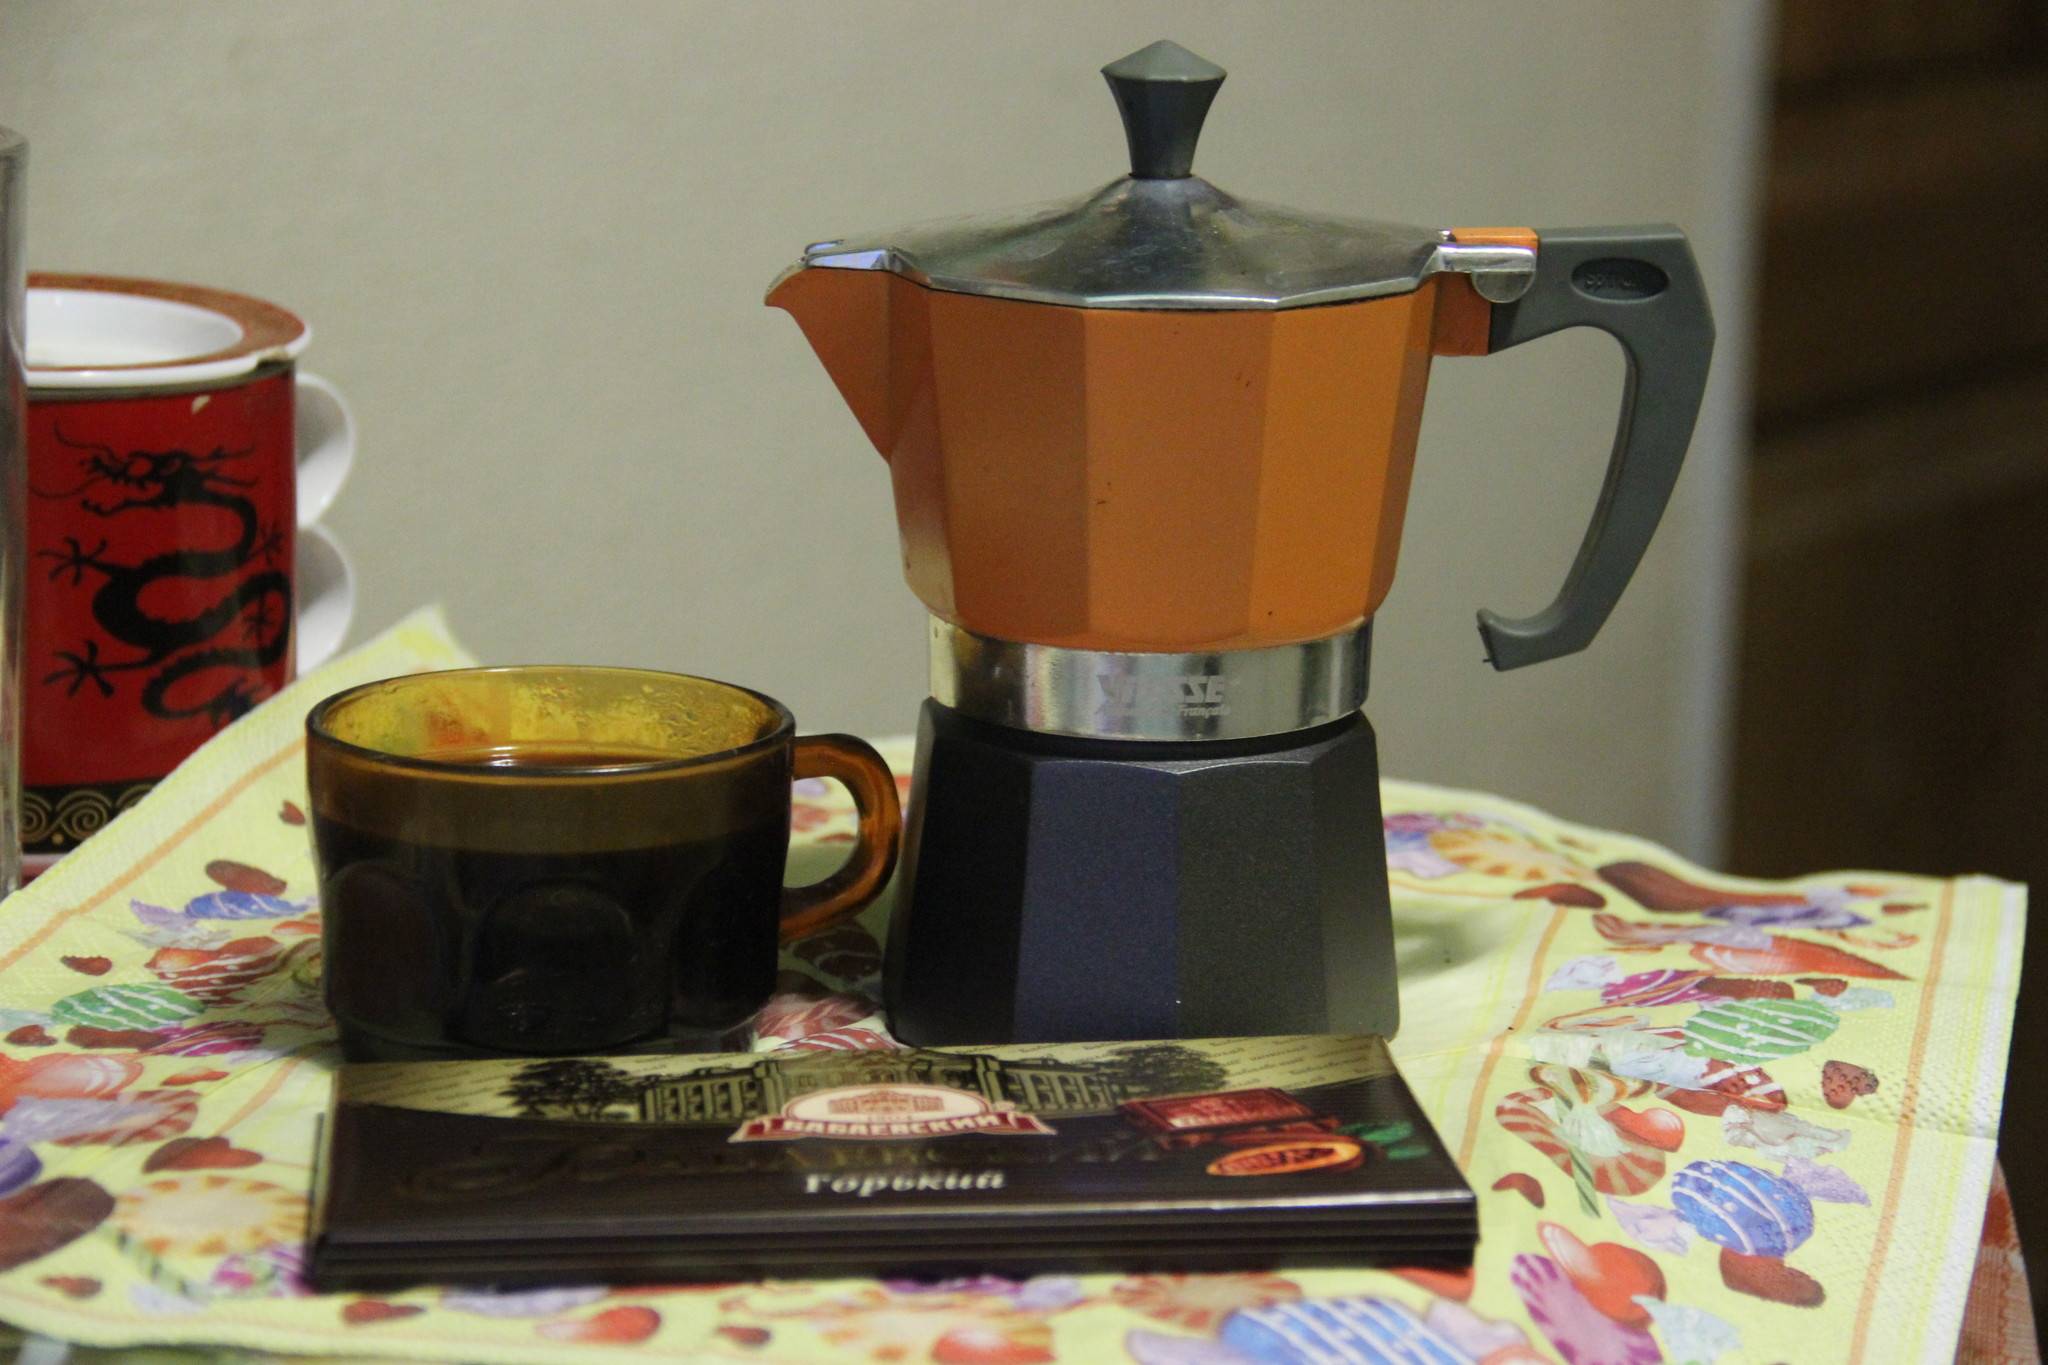 Гейзерная кофеварка или турка: что лучше для кофе